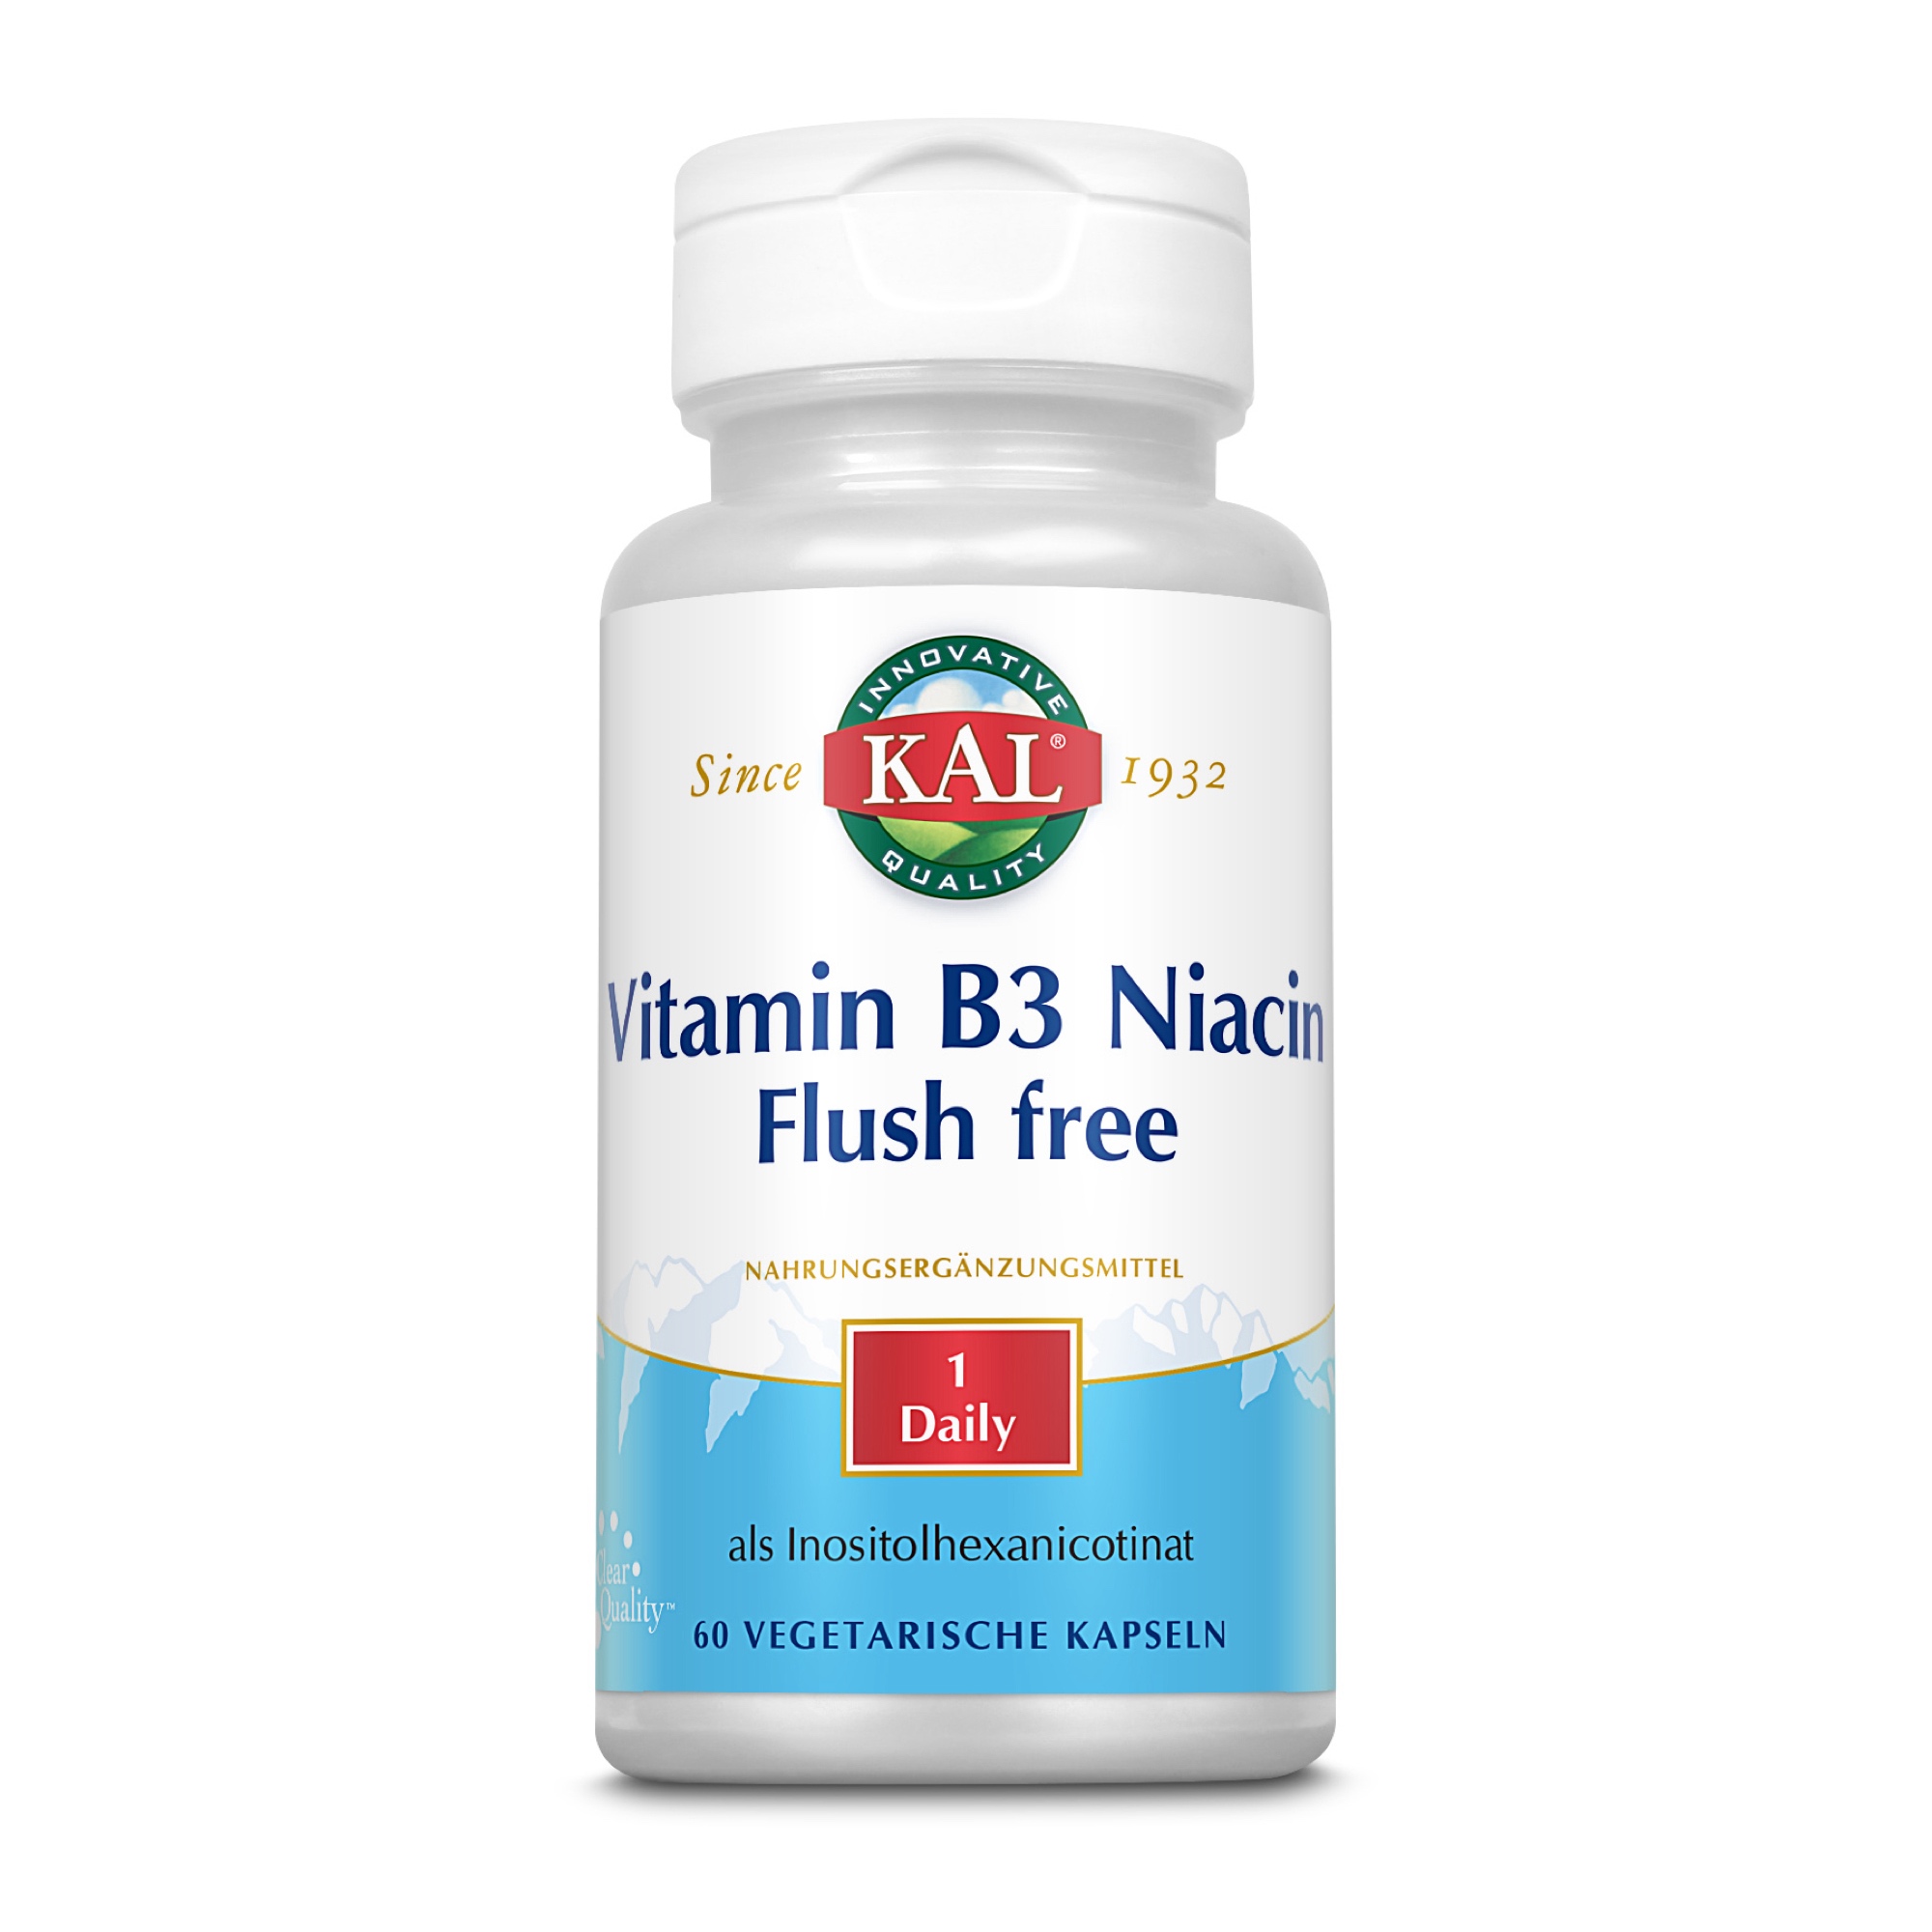 Vitamin B 3 Niacin Flush free